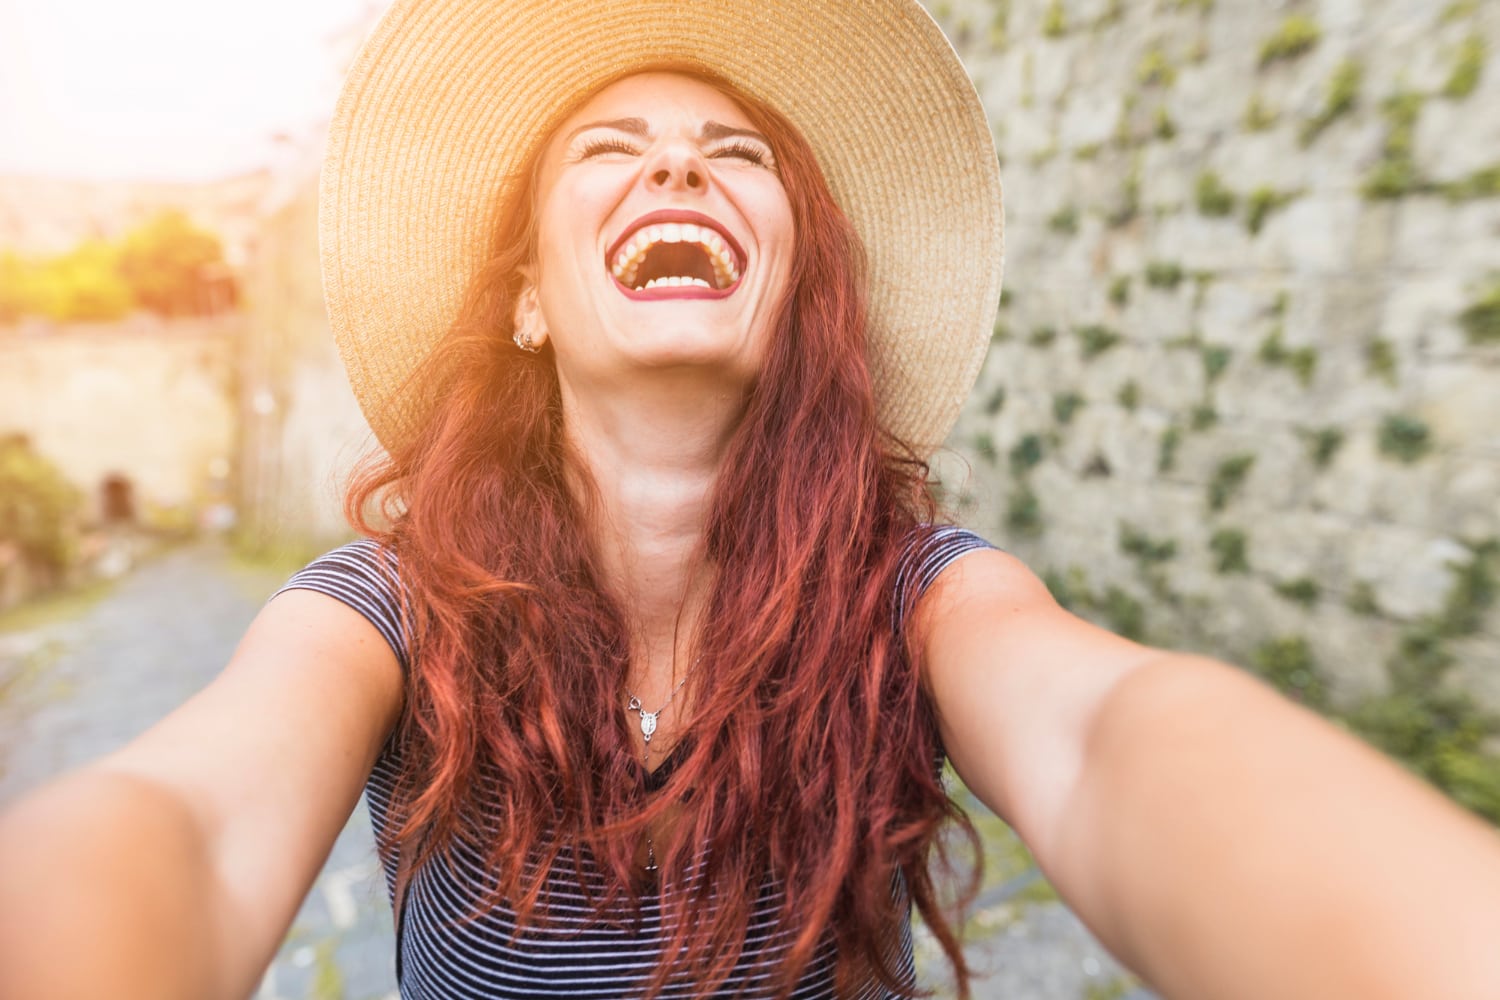 Cambia tu perspectiva: 5 formas sencillas de llenar tu reserva de felicidad | Soy Espiritual